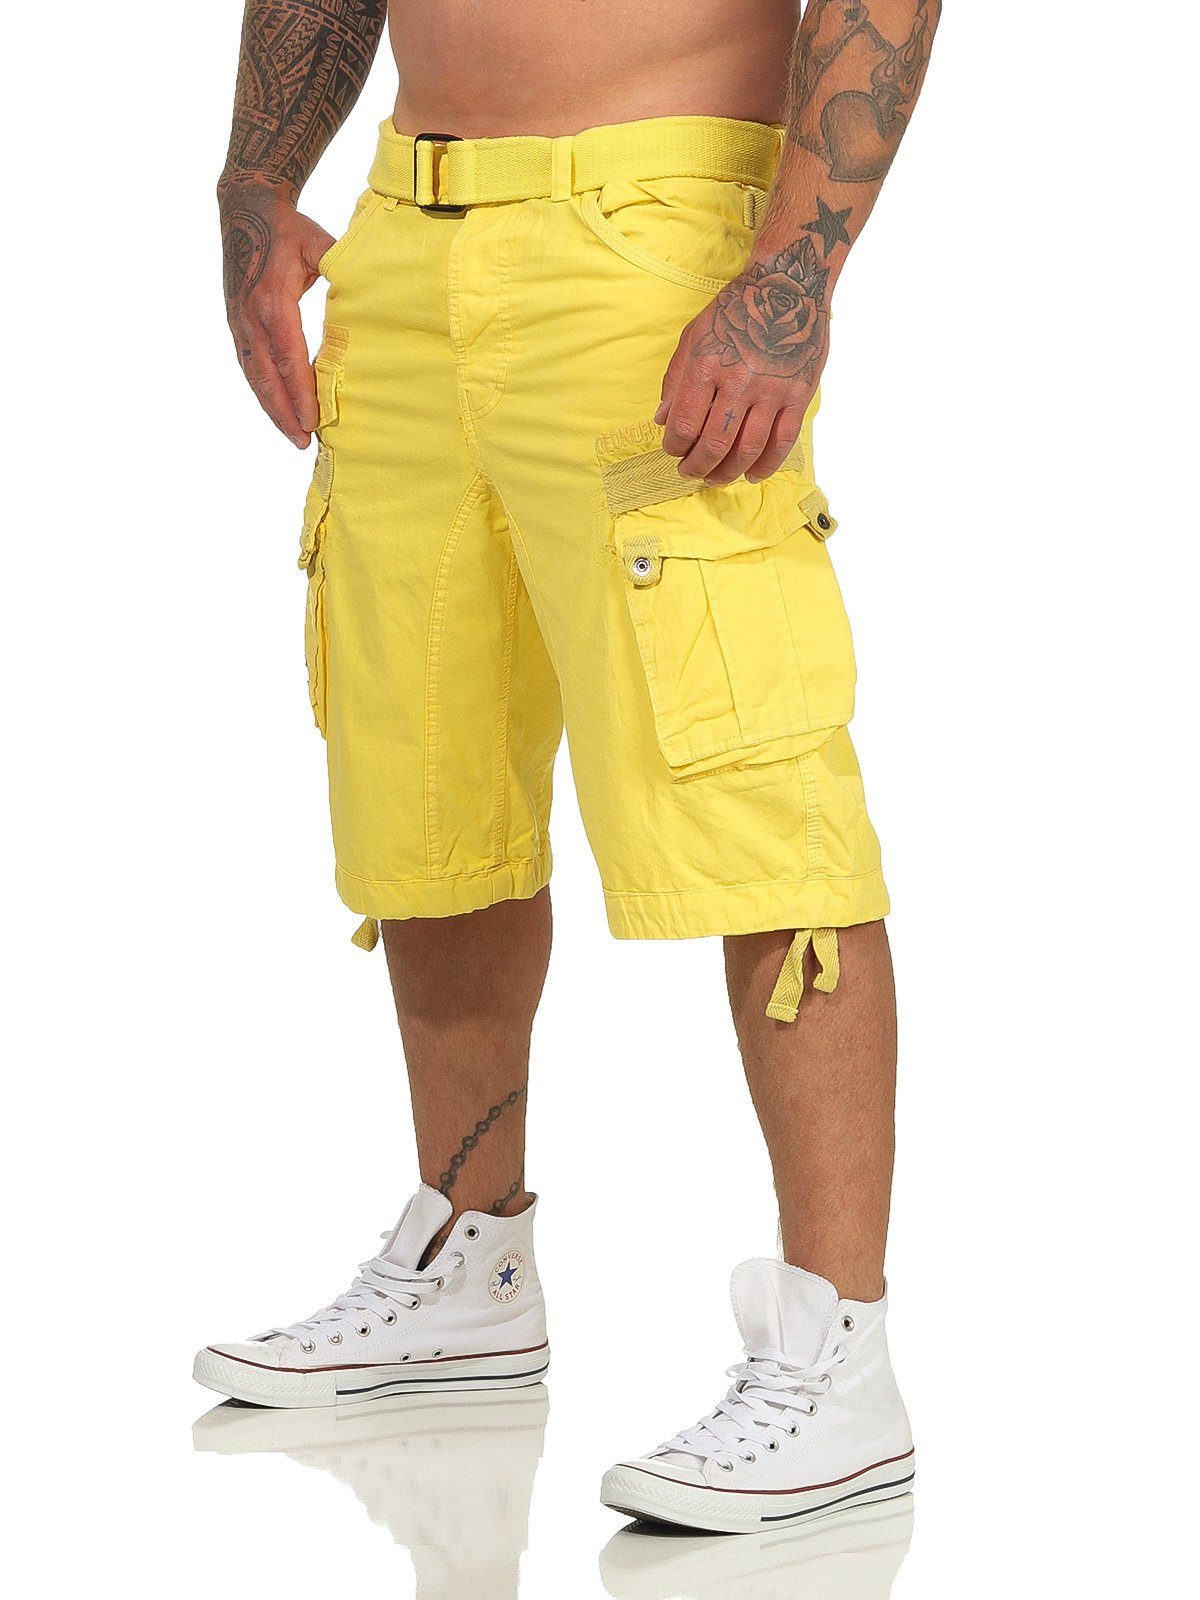 camouflage Shorts kurze Norway (mit Geographical Shorts, Hose, / Herren Cargoshorts PANORAMIQUE Gürtel) unifarben abnehmbarem yellow